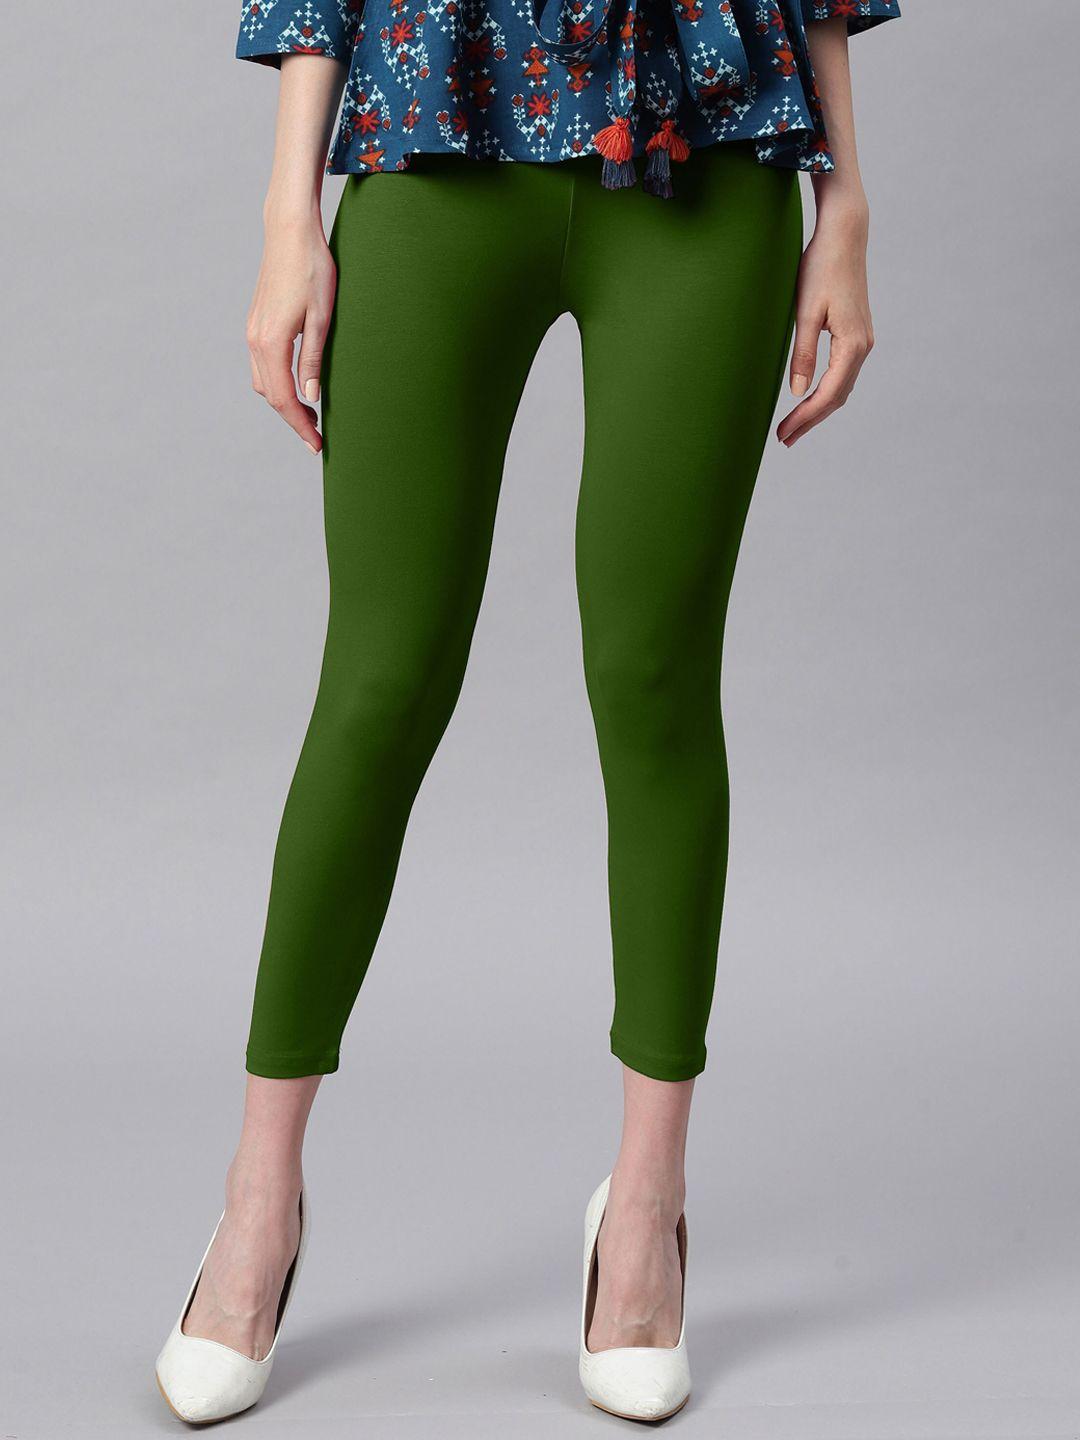 janasya women green solid ankle length leggings